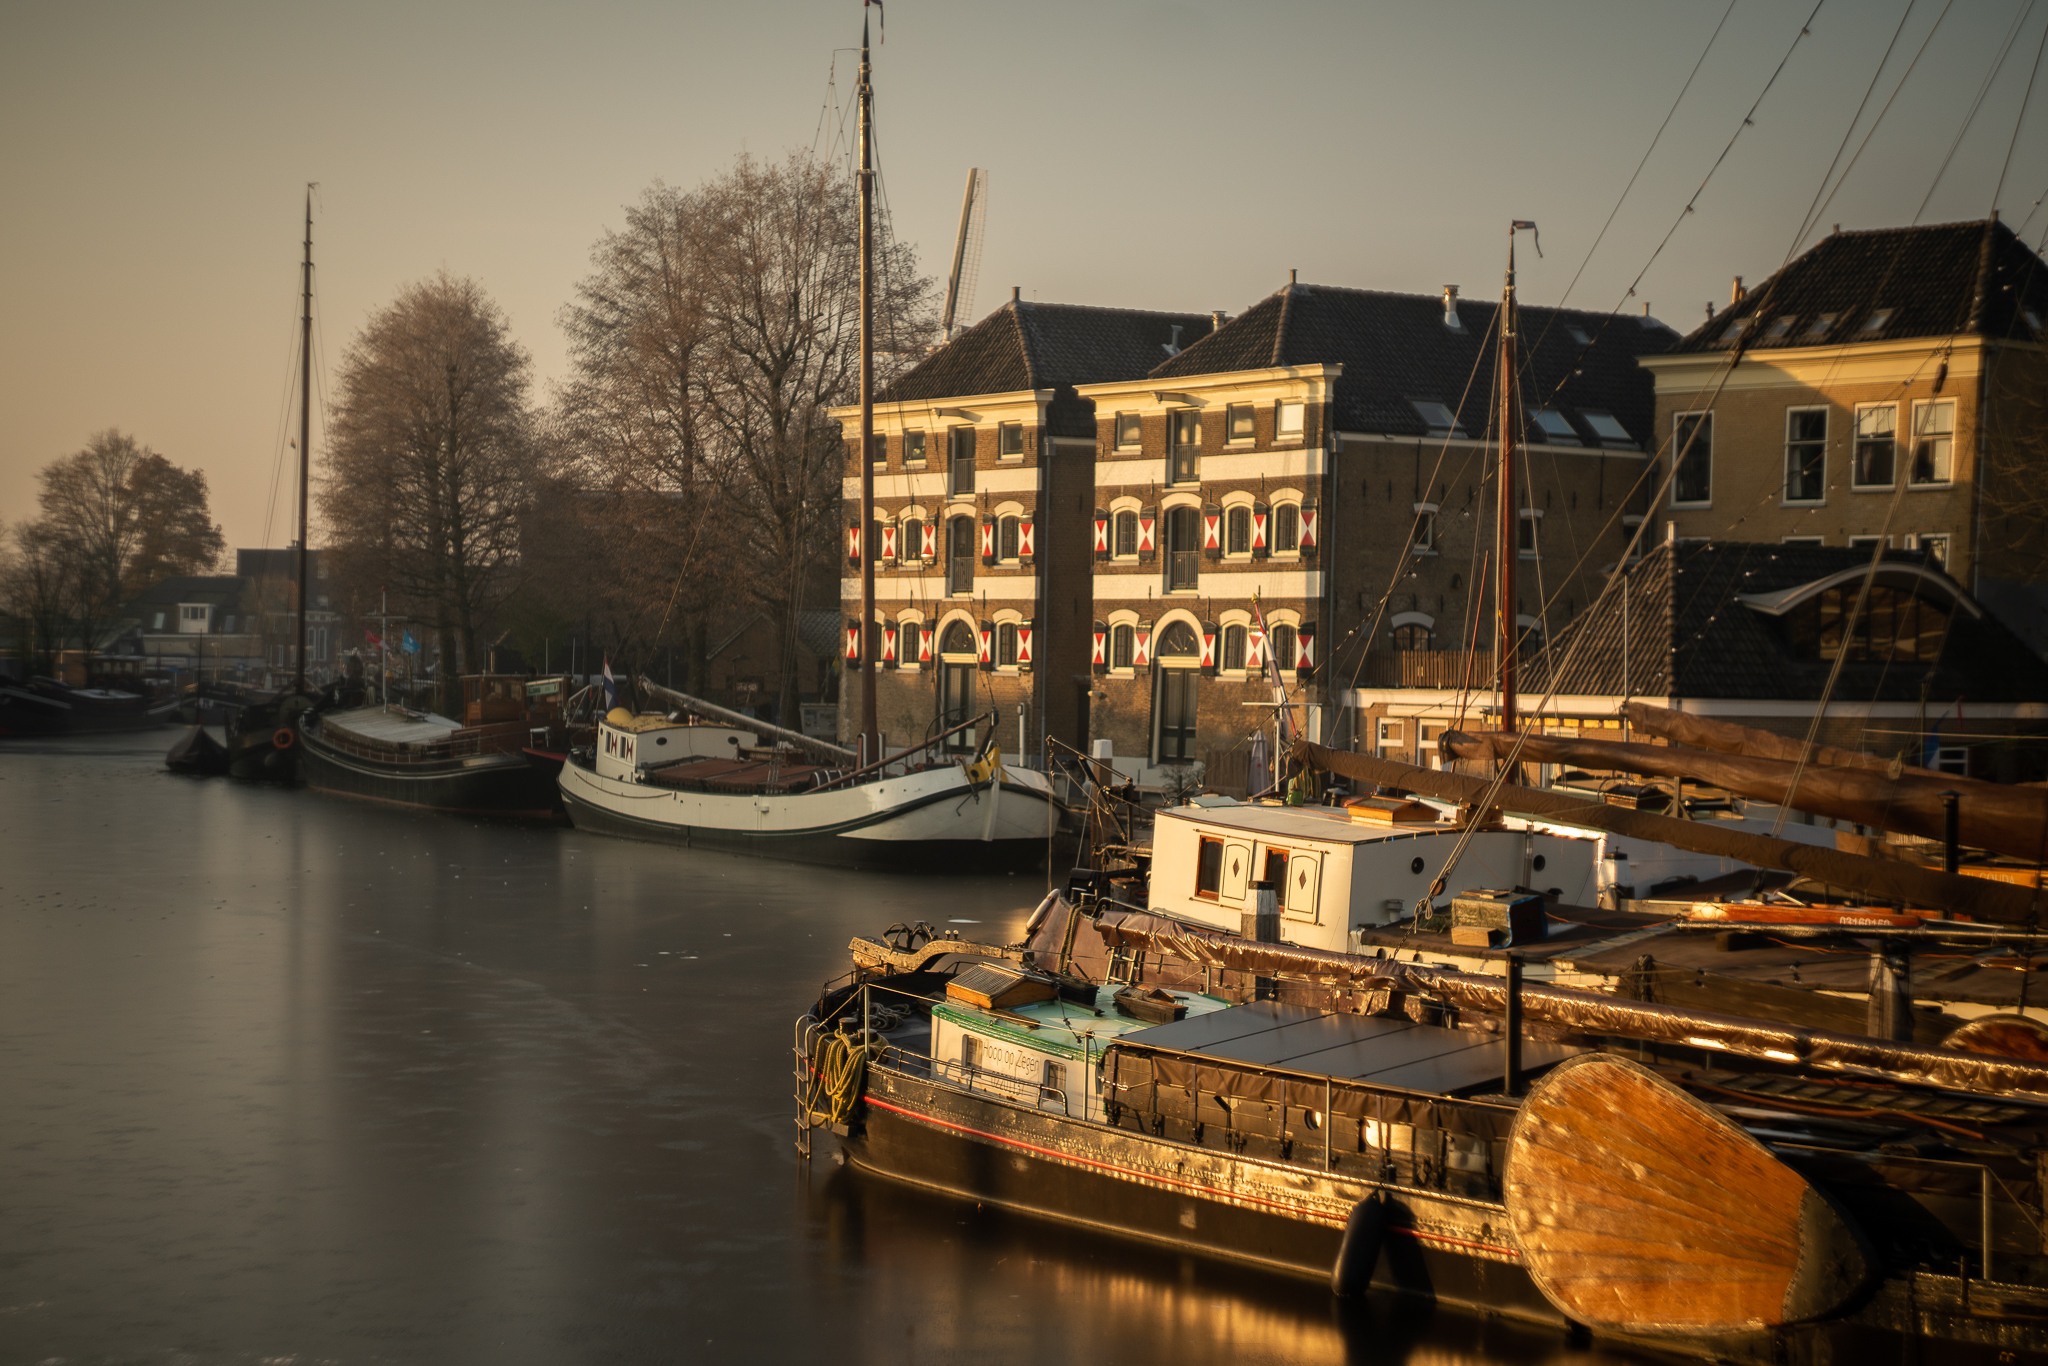 Museumhaven Gouda - IJs in de havenkom, foto: Peter Groeneboom